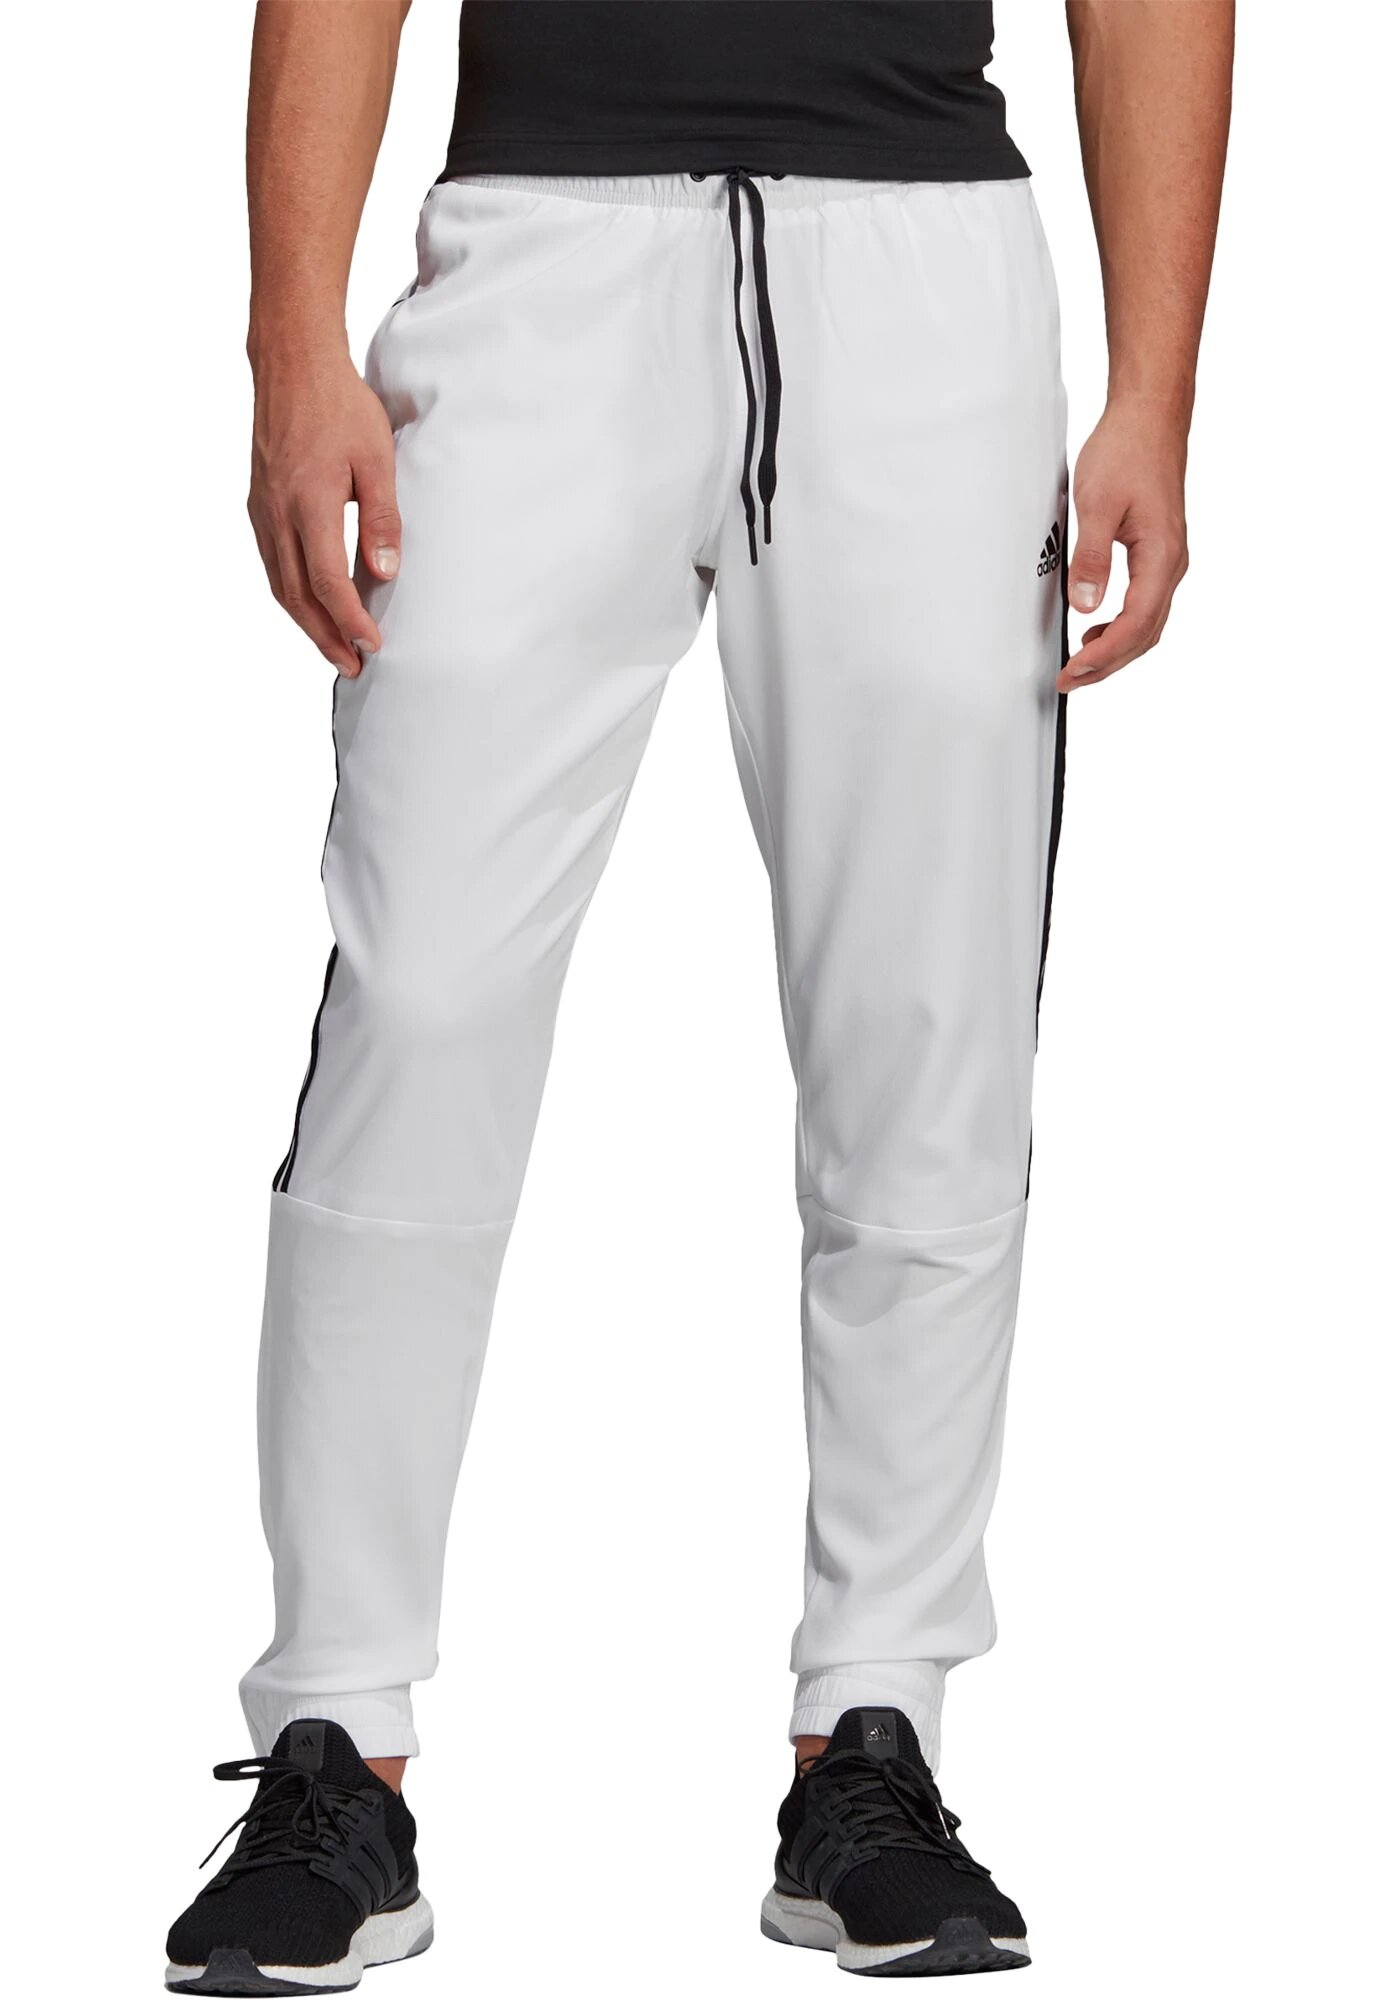 Adidas Men's Atheletics ID Tiro Woven Pants White EH4114 | eBay